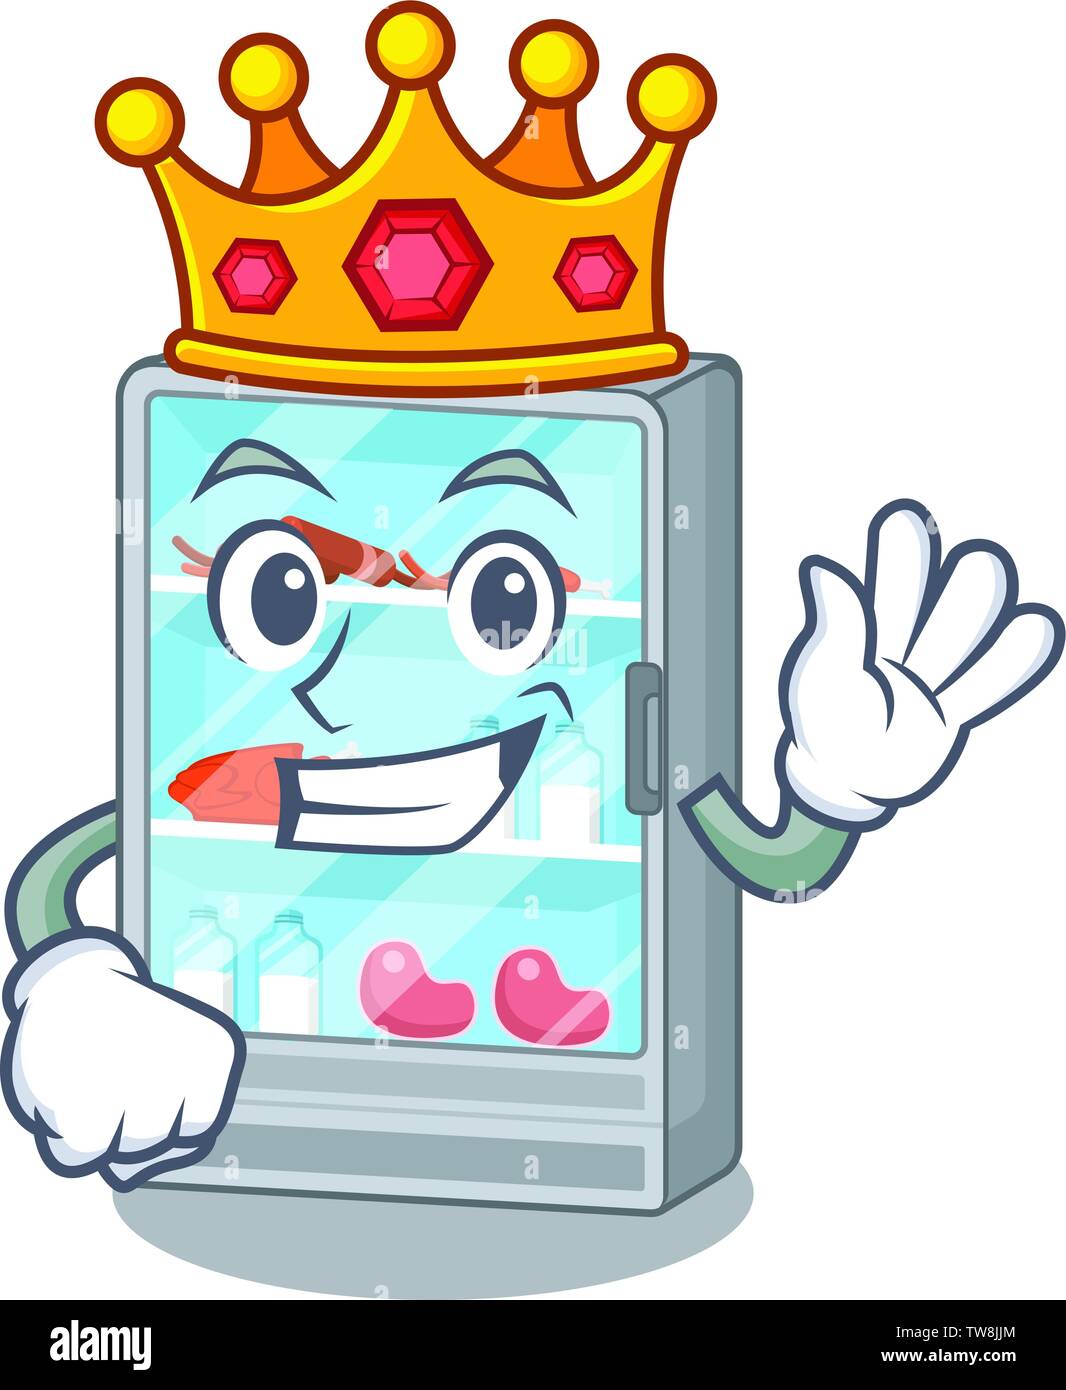 King jouet en forme de réfrigérateur de cartoon Image Vectorielle Stock -  Alamy